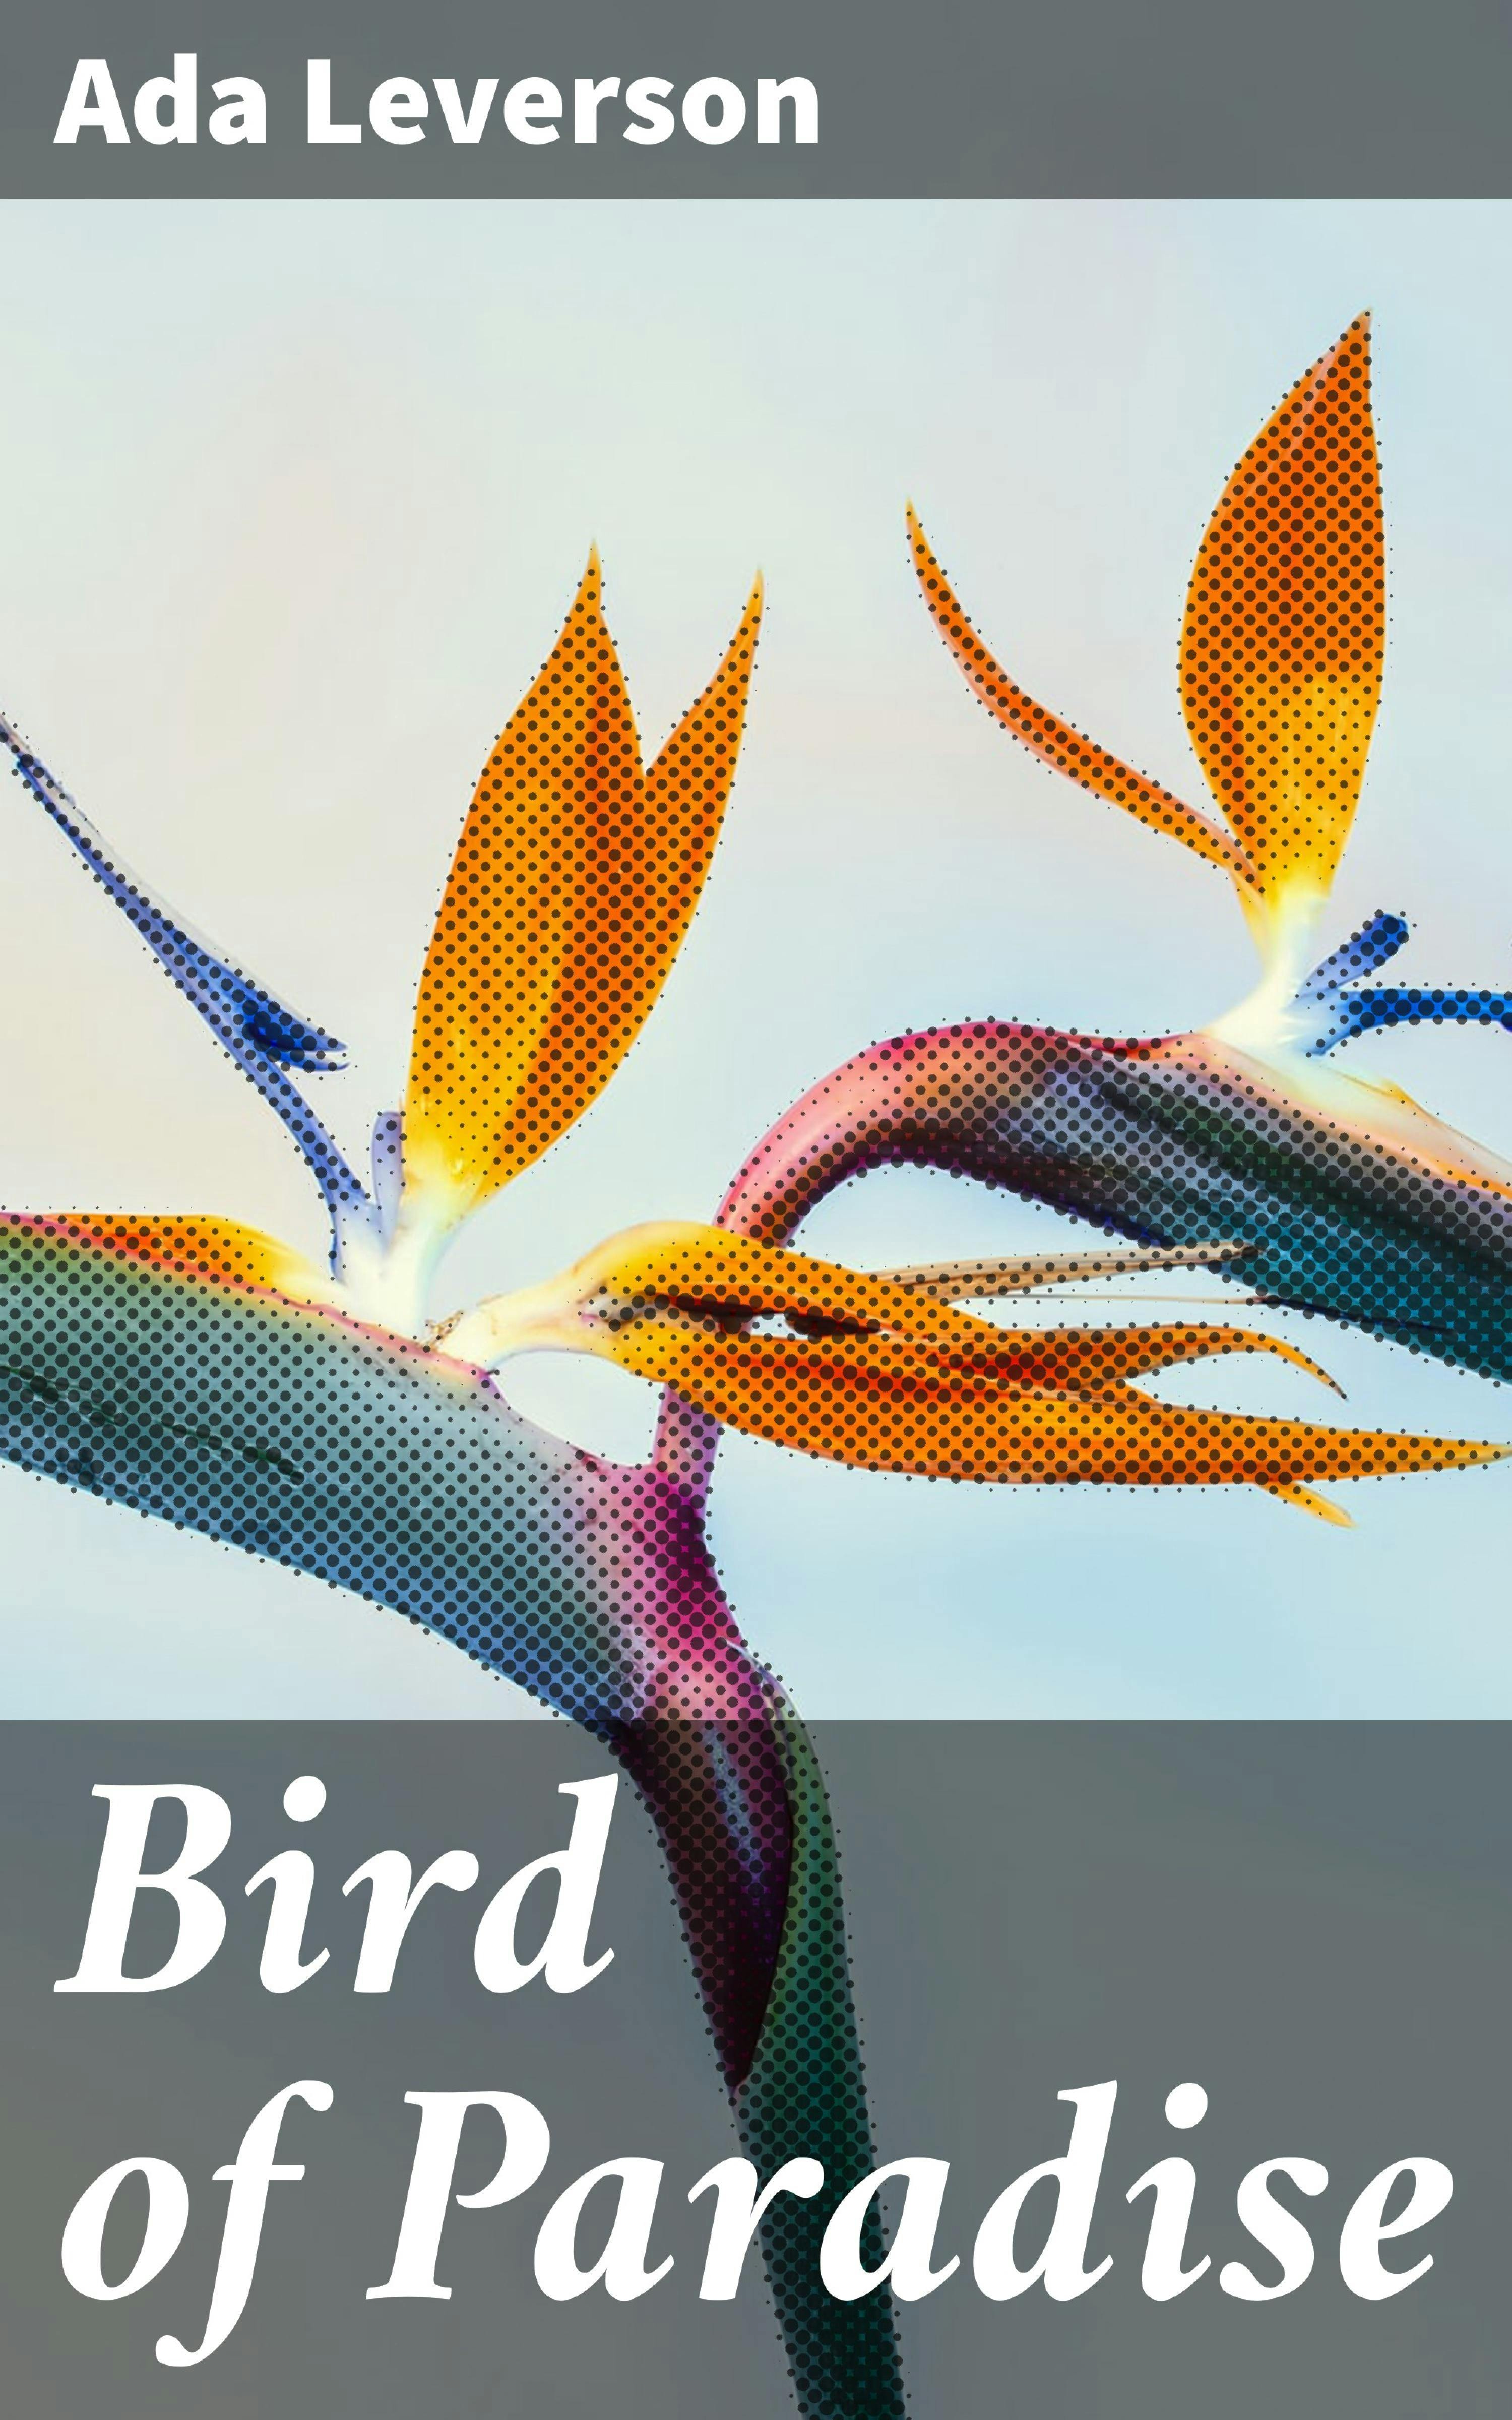 Bird of Paradise - undefined